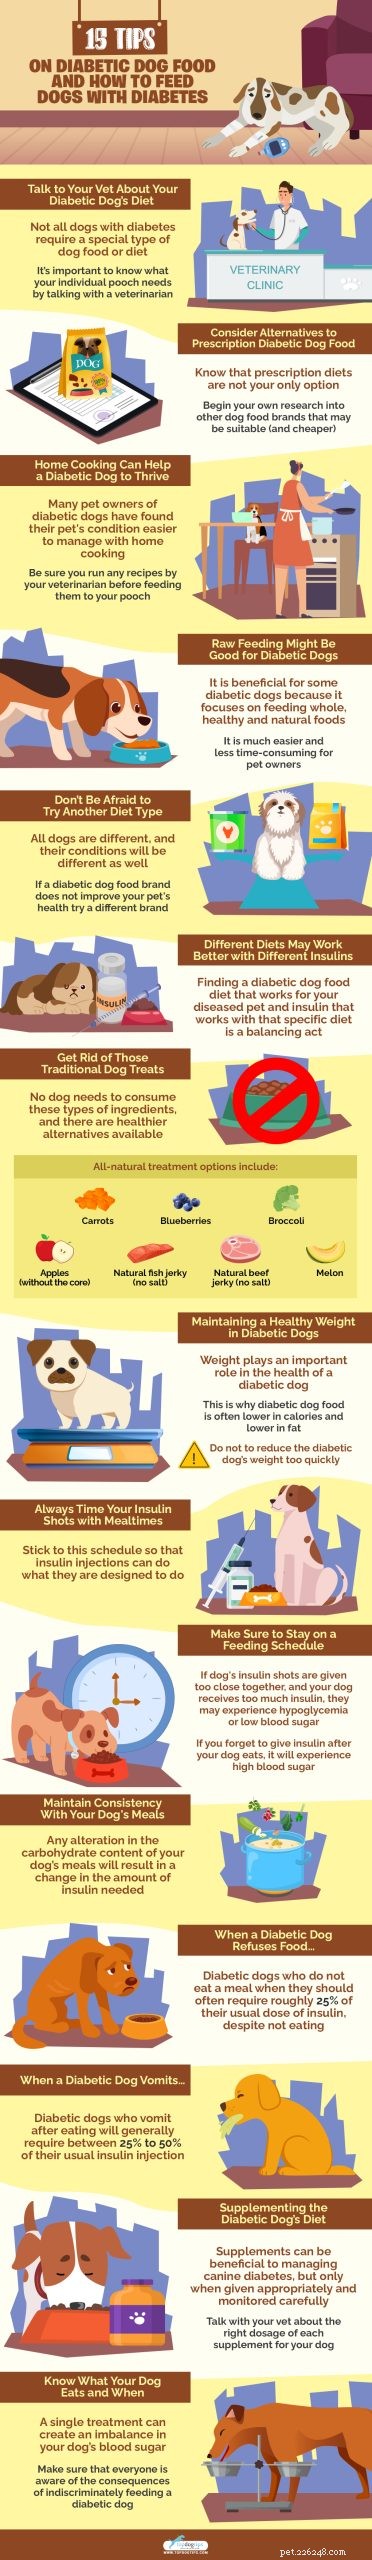 15 consigli sul cibo per cani diabetici e su come nutrire i cani con diabete